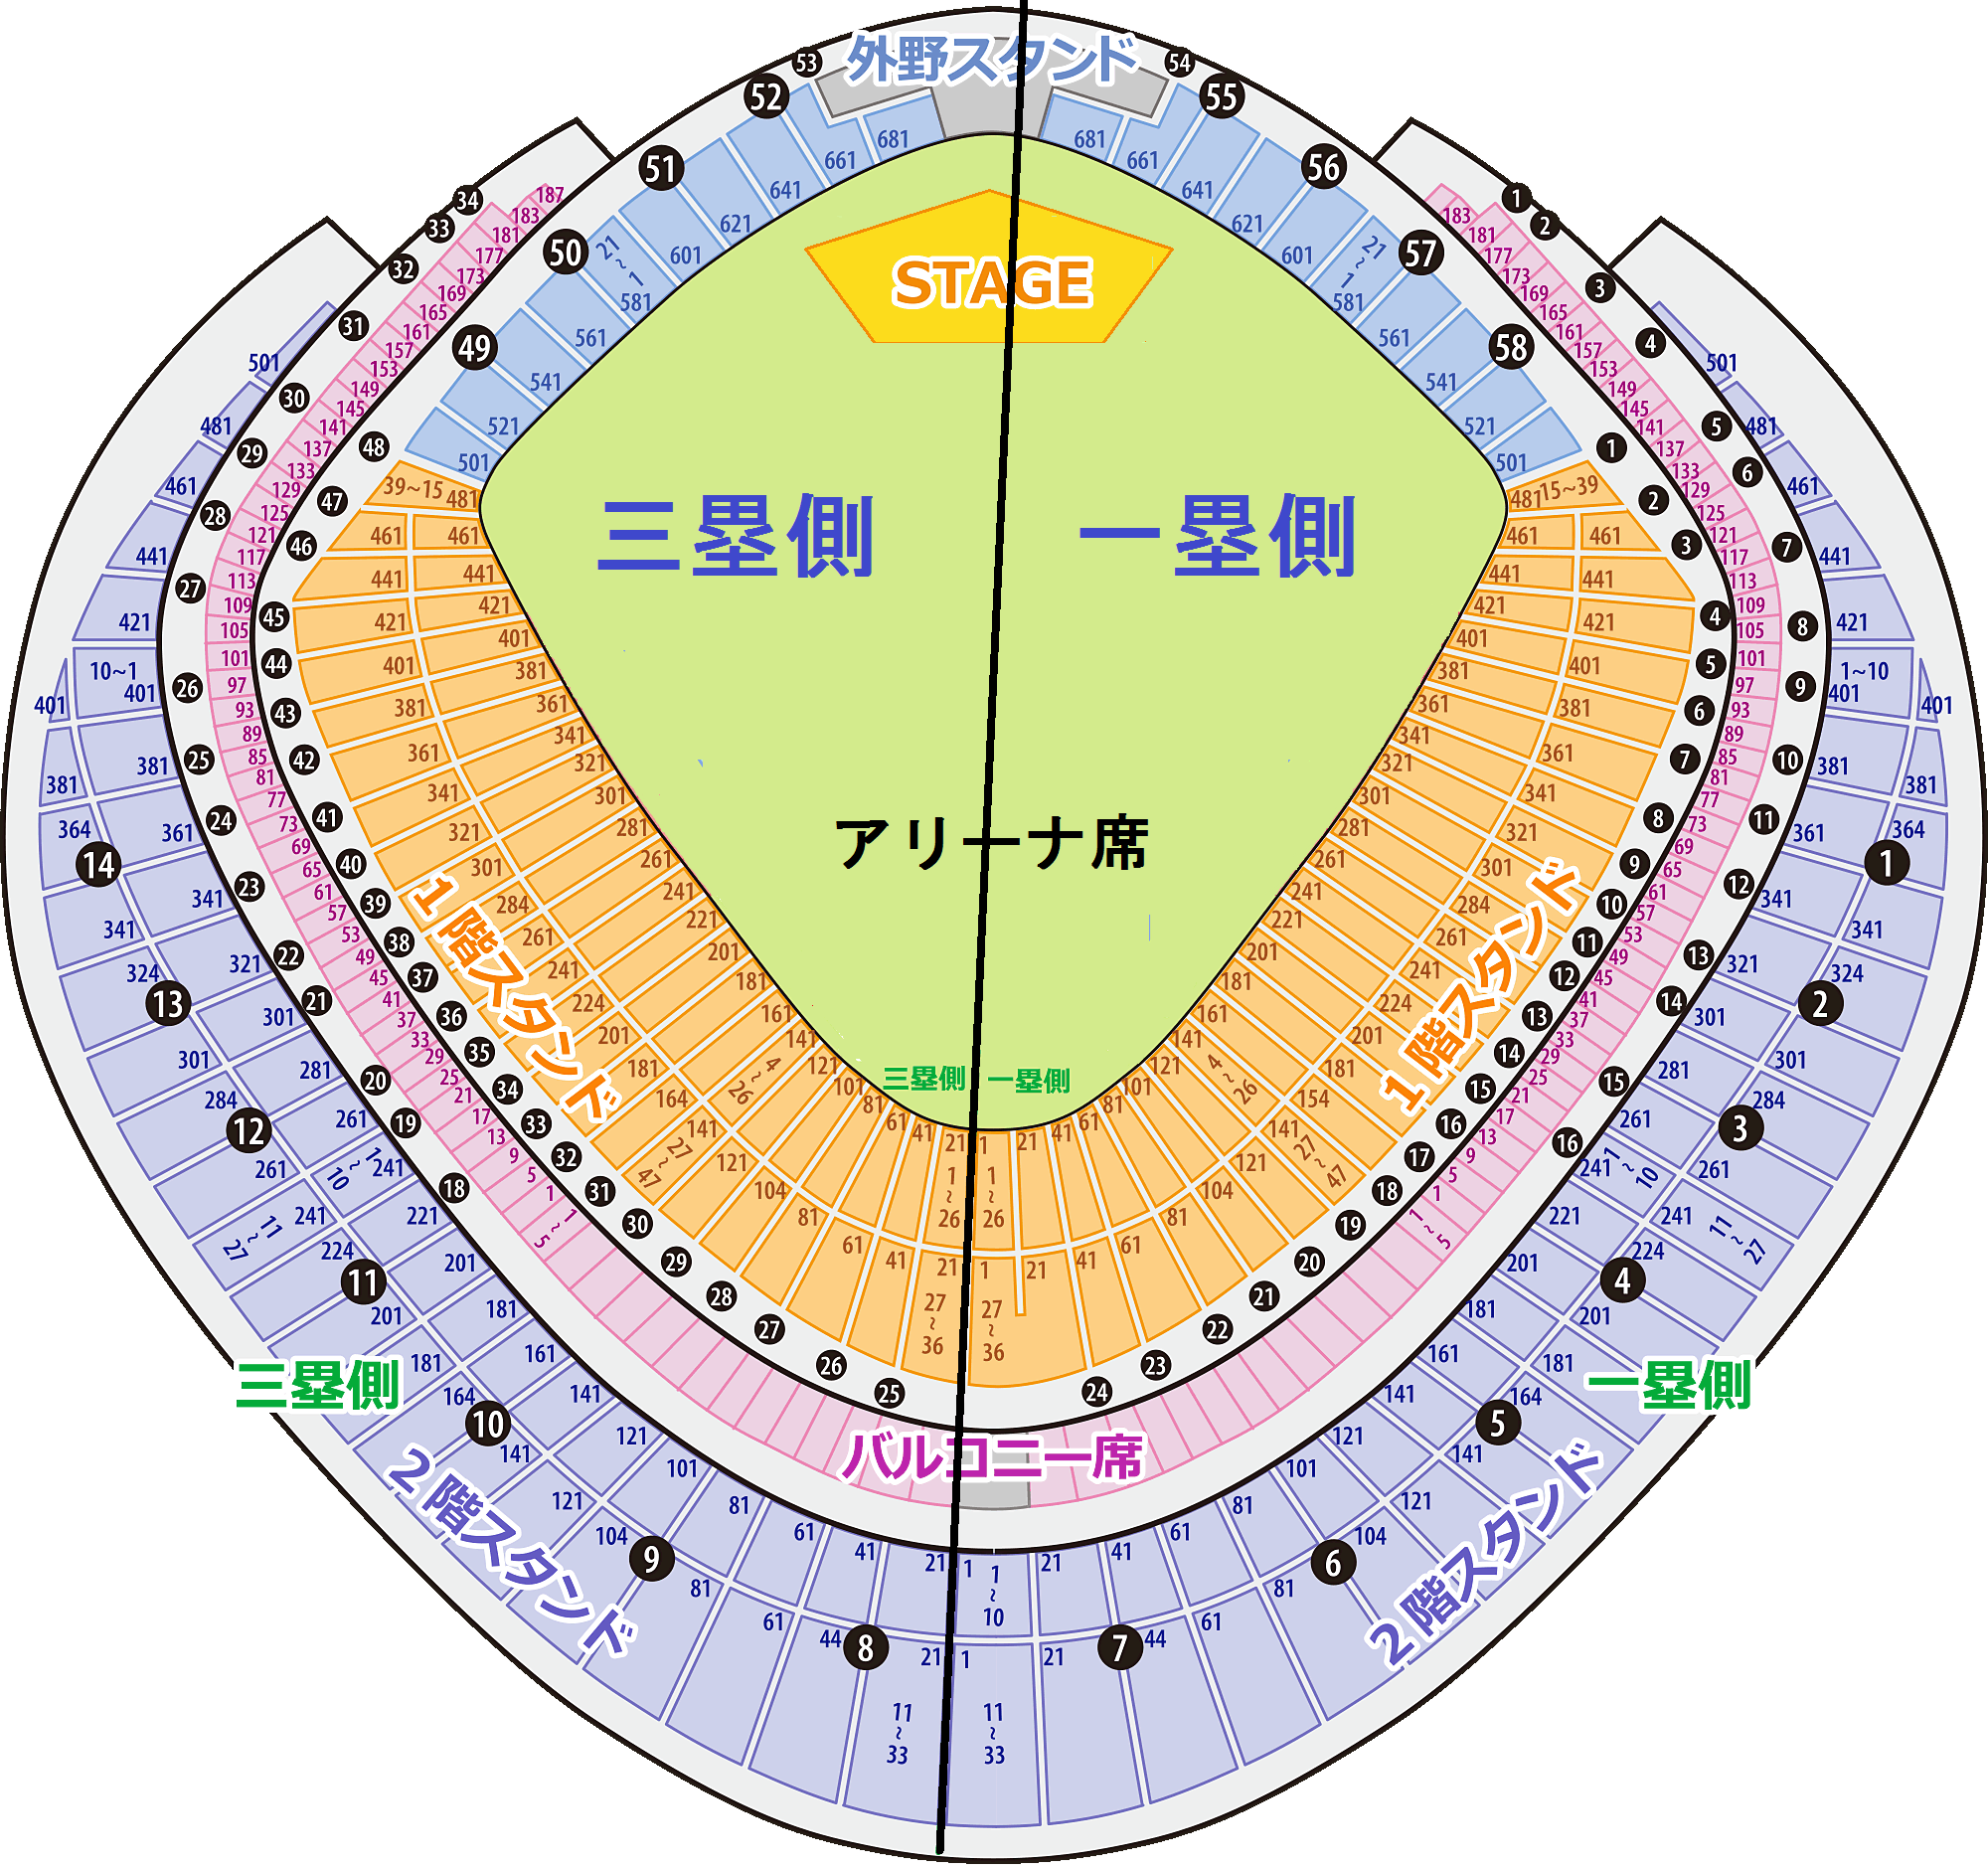 東京ドーム スタンド席の座席表と見え方について | ライブ基地